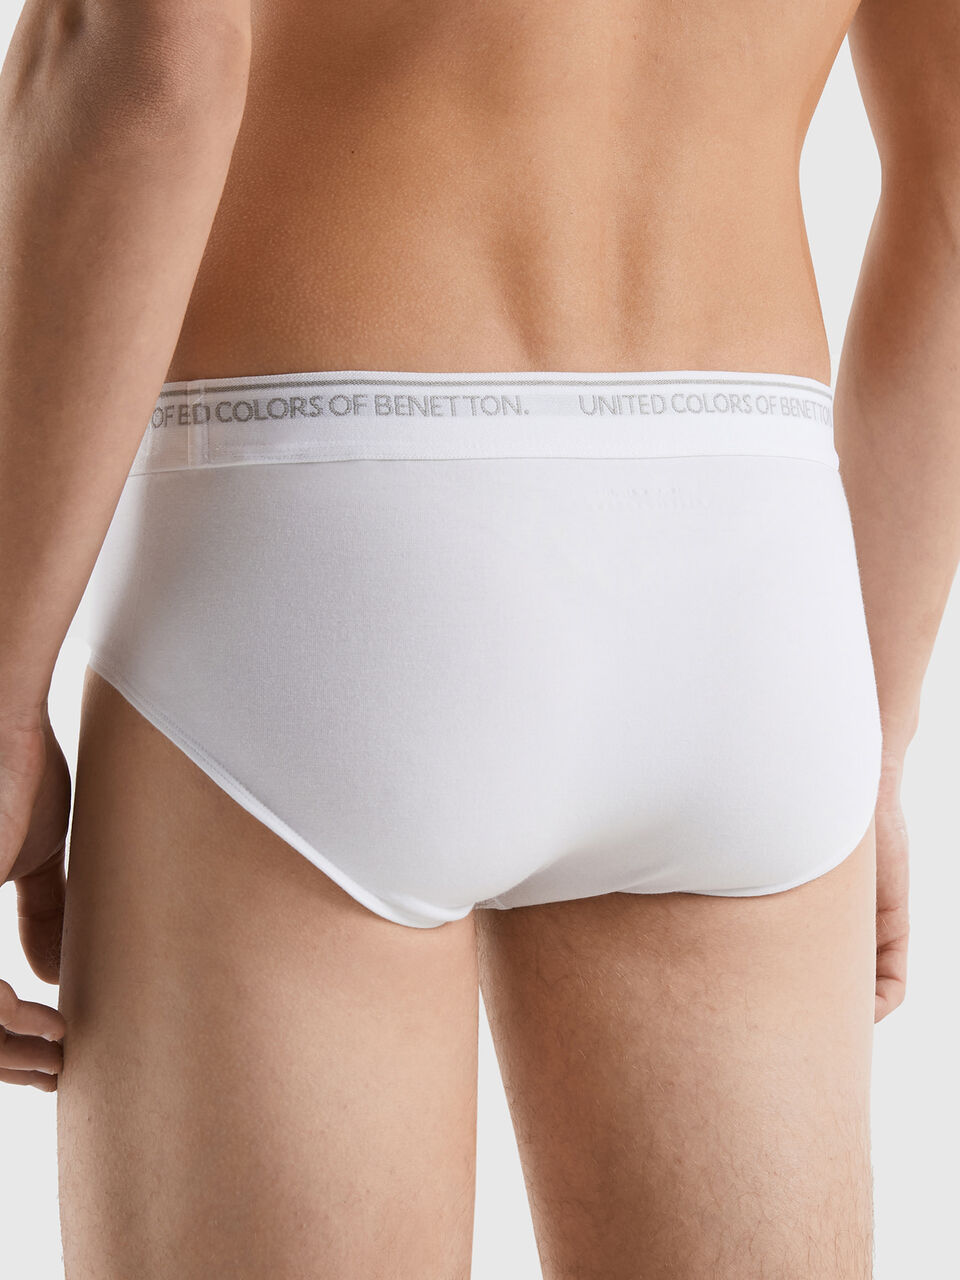 Underwear in organic cotton White  Benetton Mens Underwear and Pyjamas -  Panna Holidays